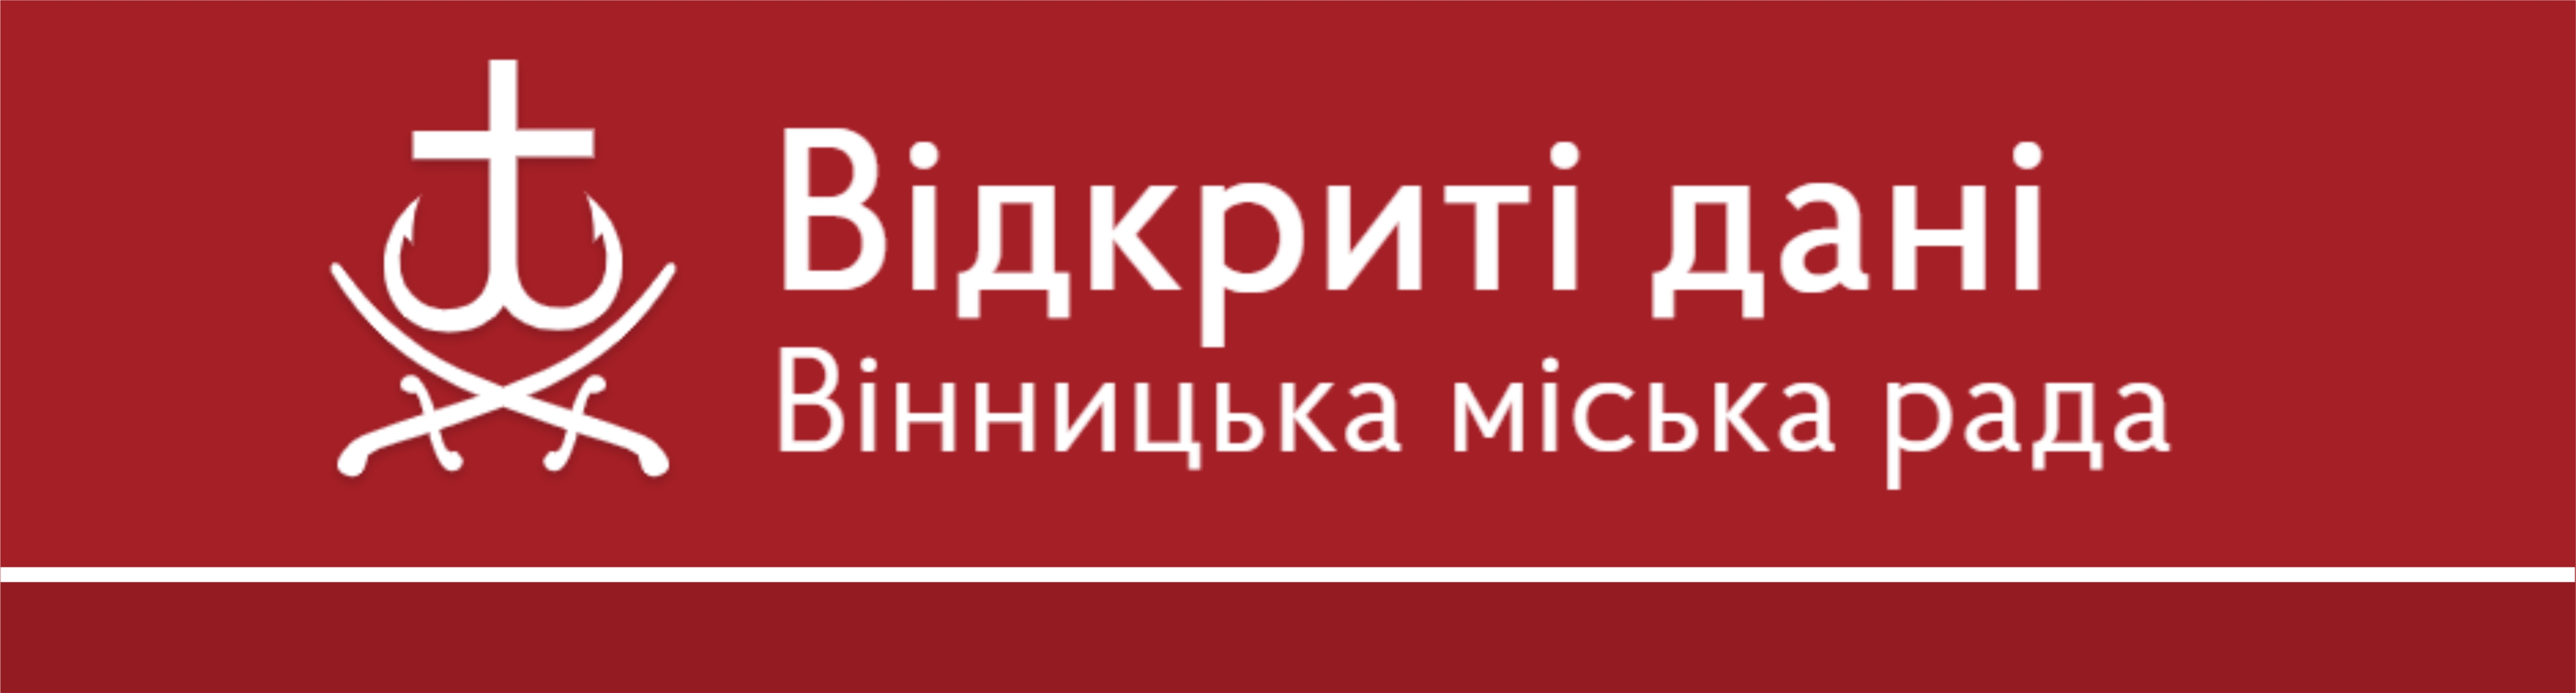 Порталі відкритих даних Вінницької міської ради